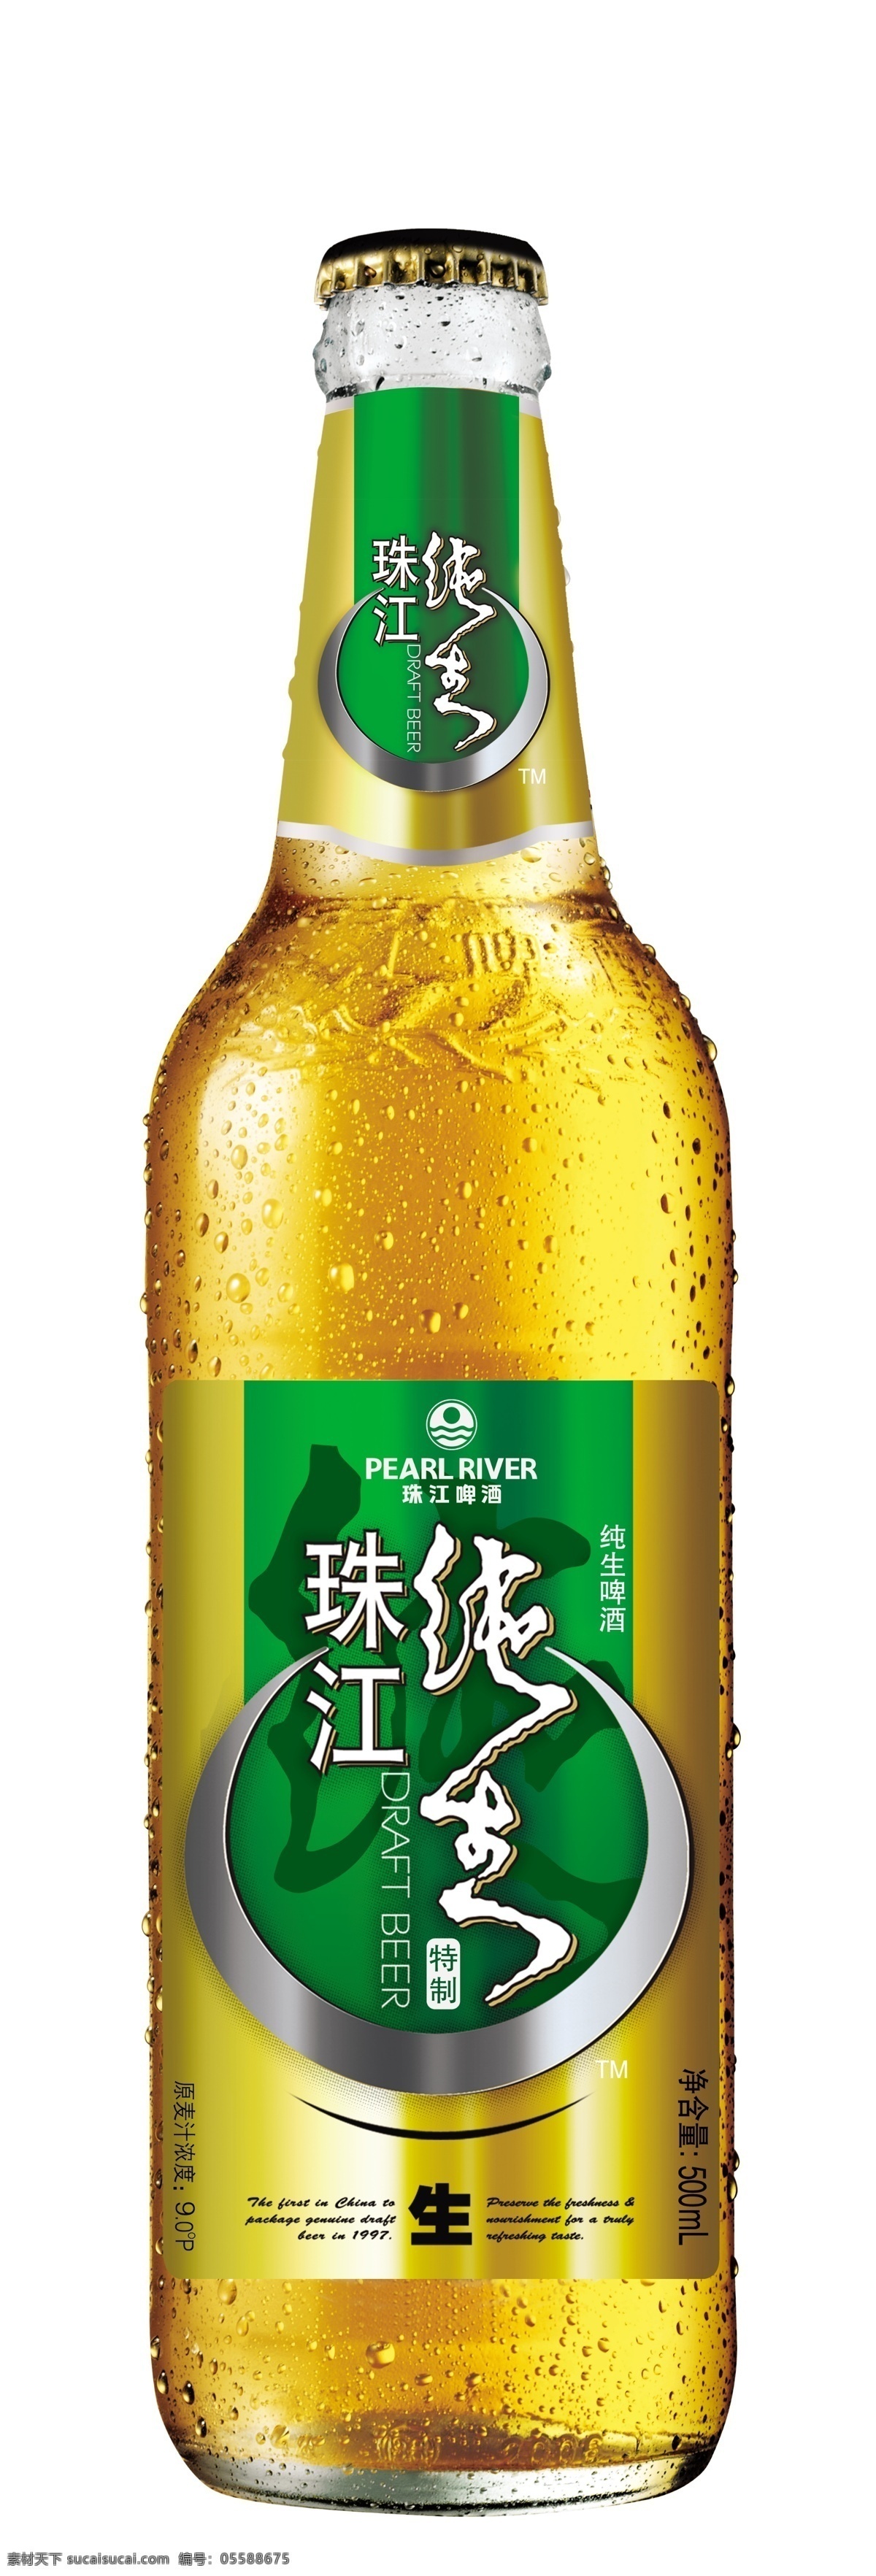 珠江啤酒 珠江纯生 啤酒 纯生 啤酒瓶